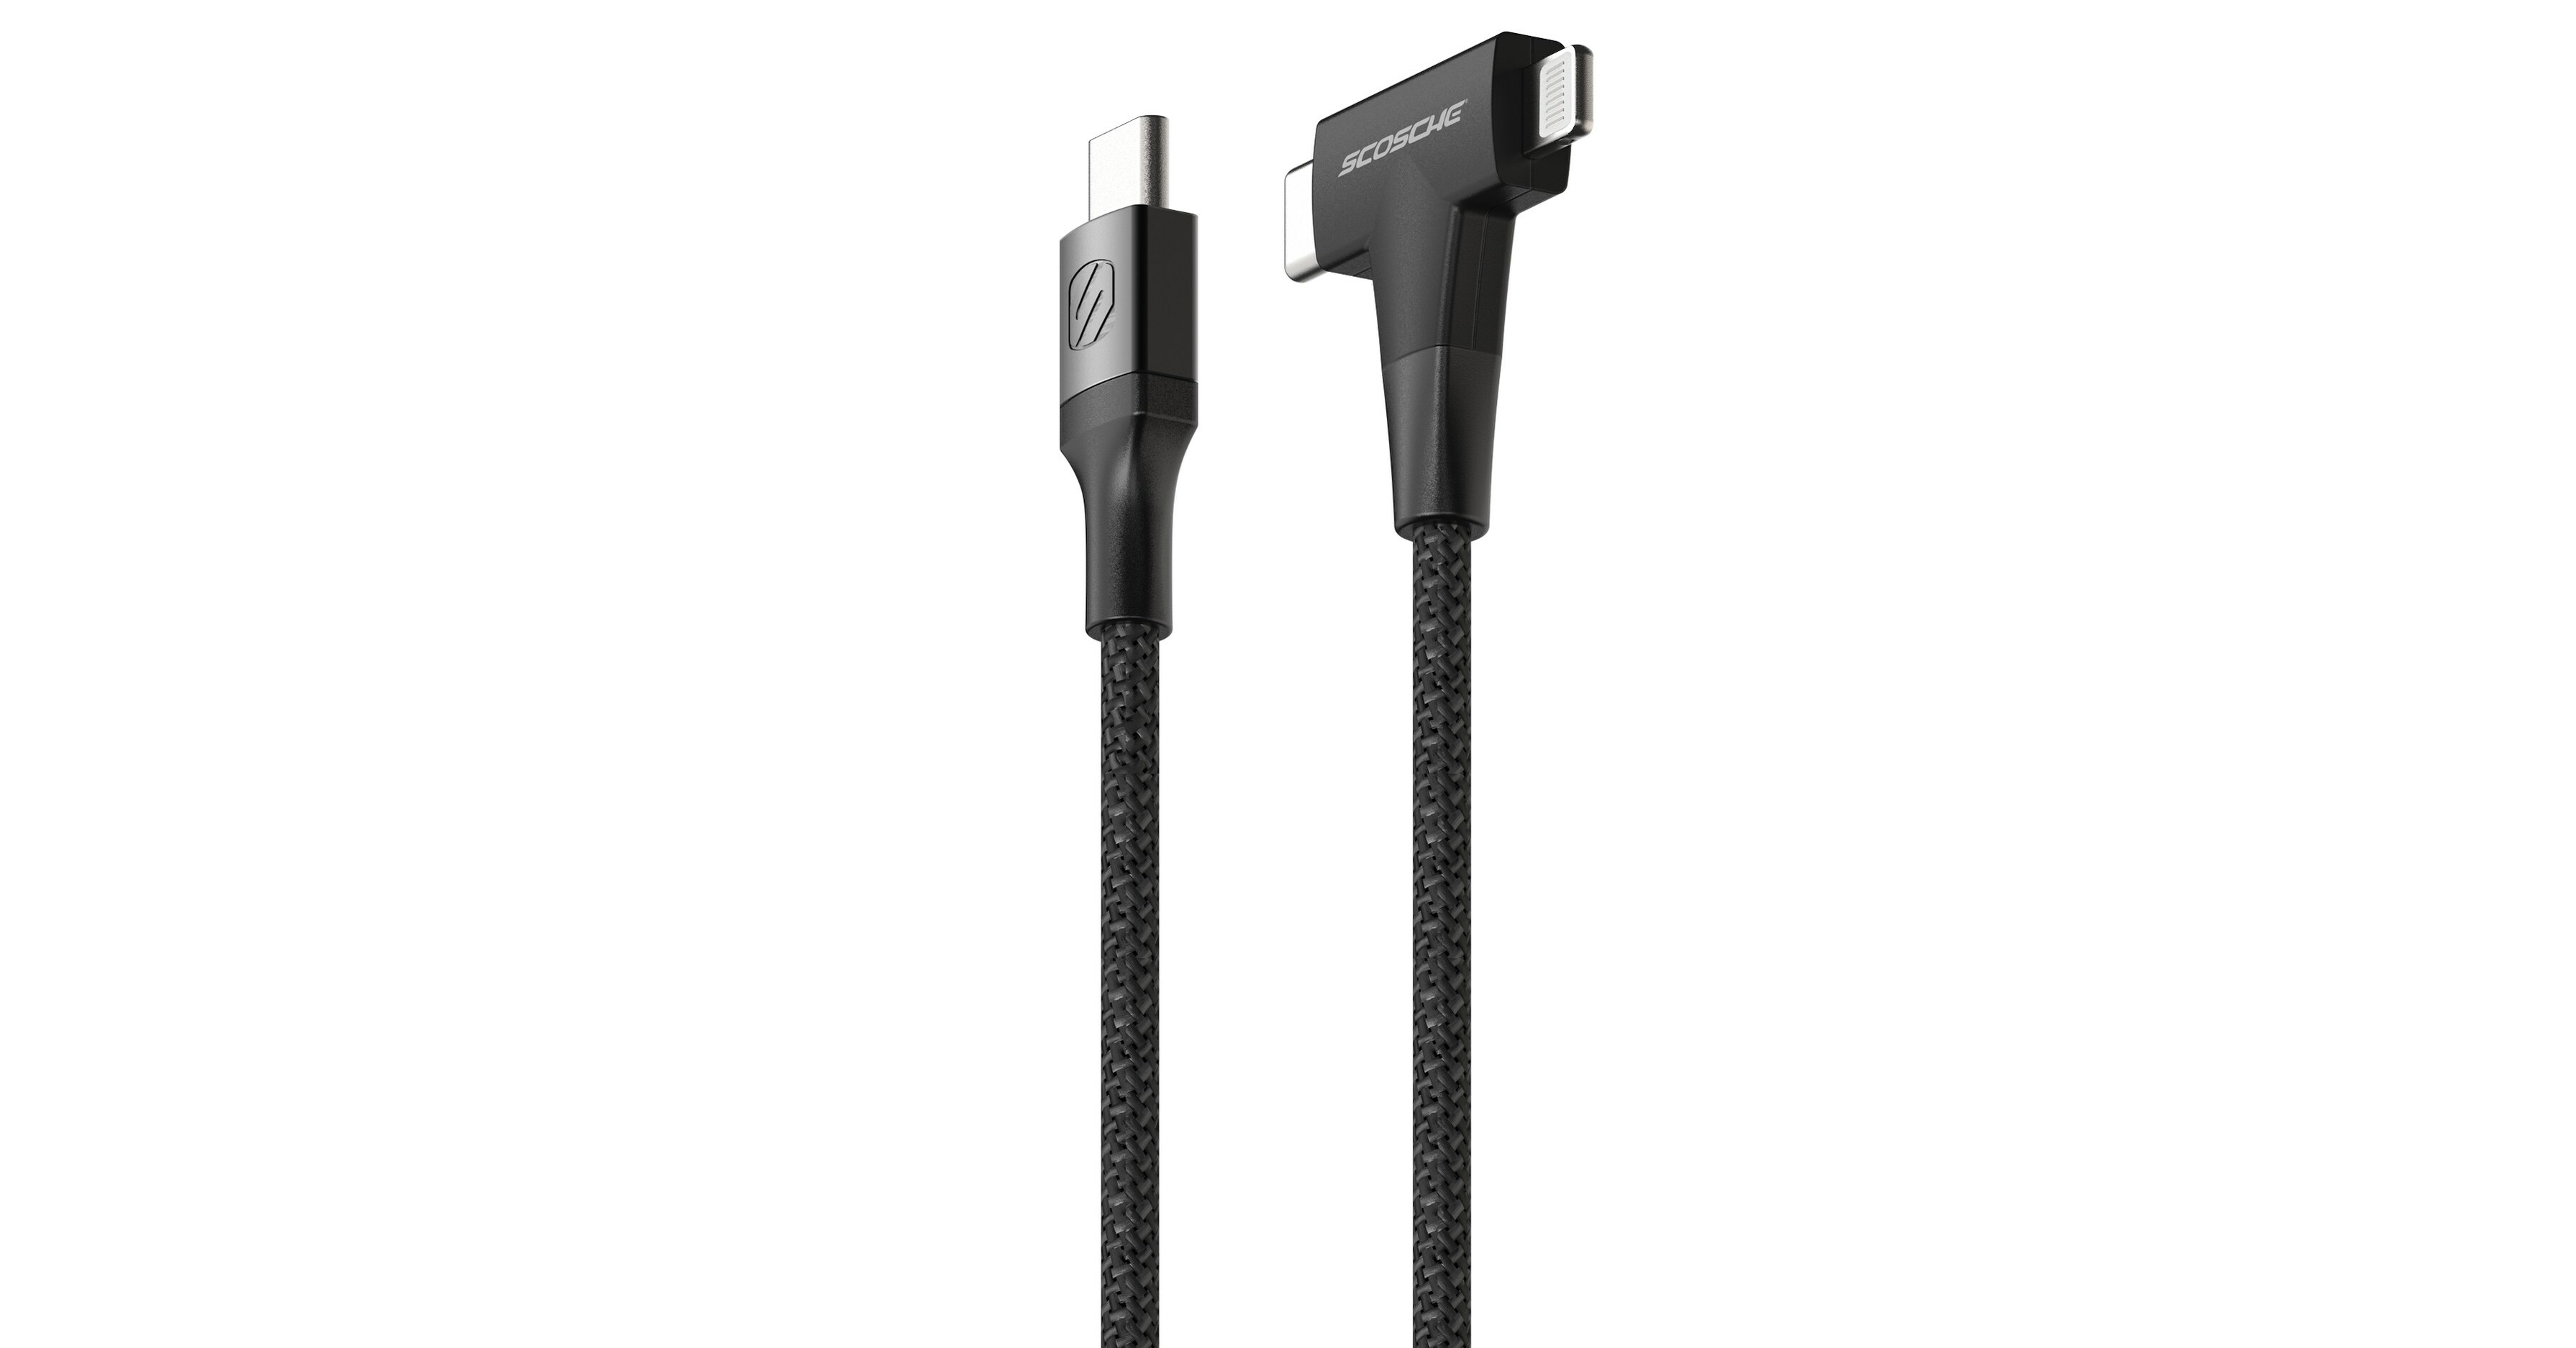 StrikeLine Premium Braided Dual USB-C Cable